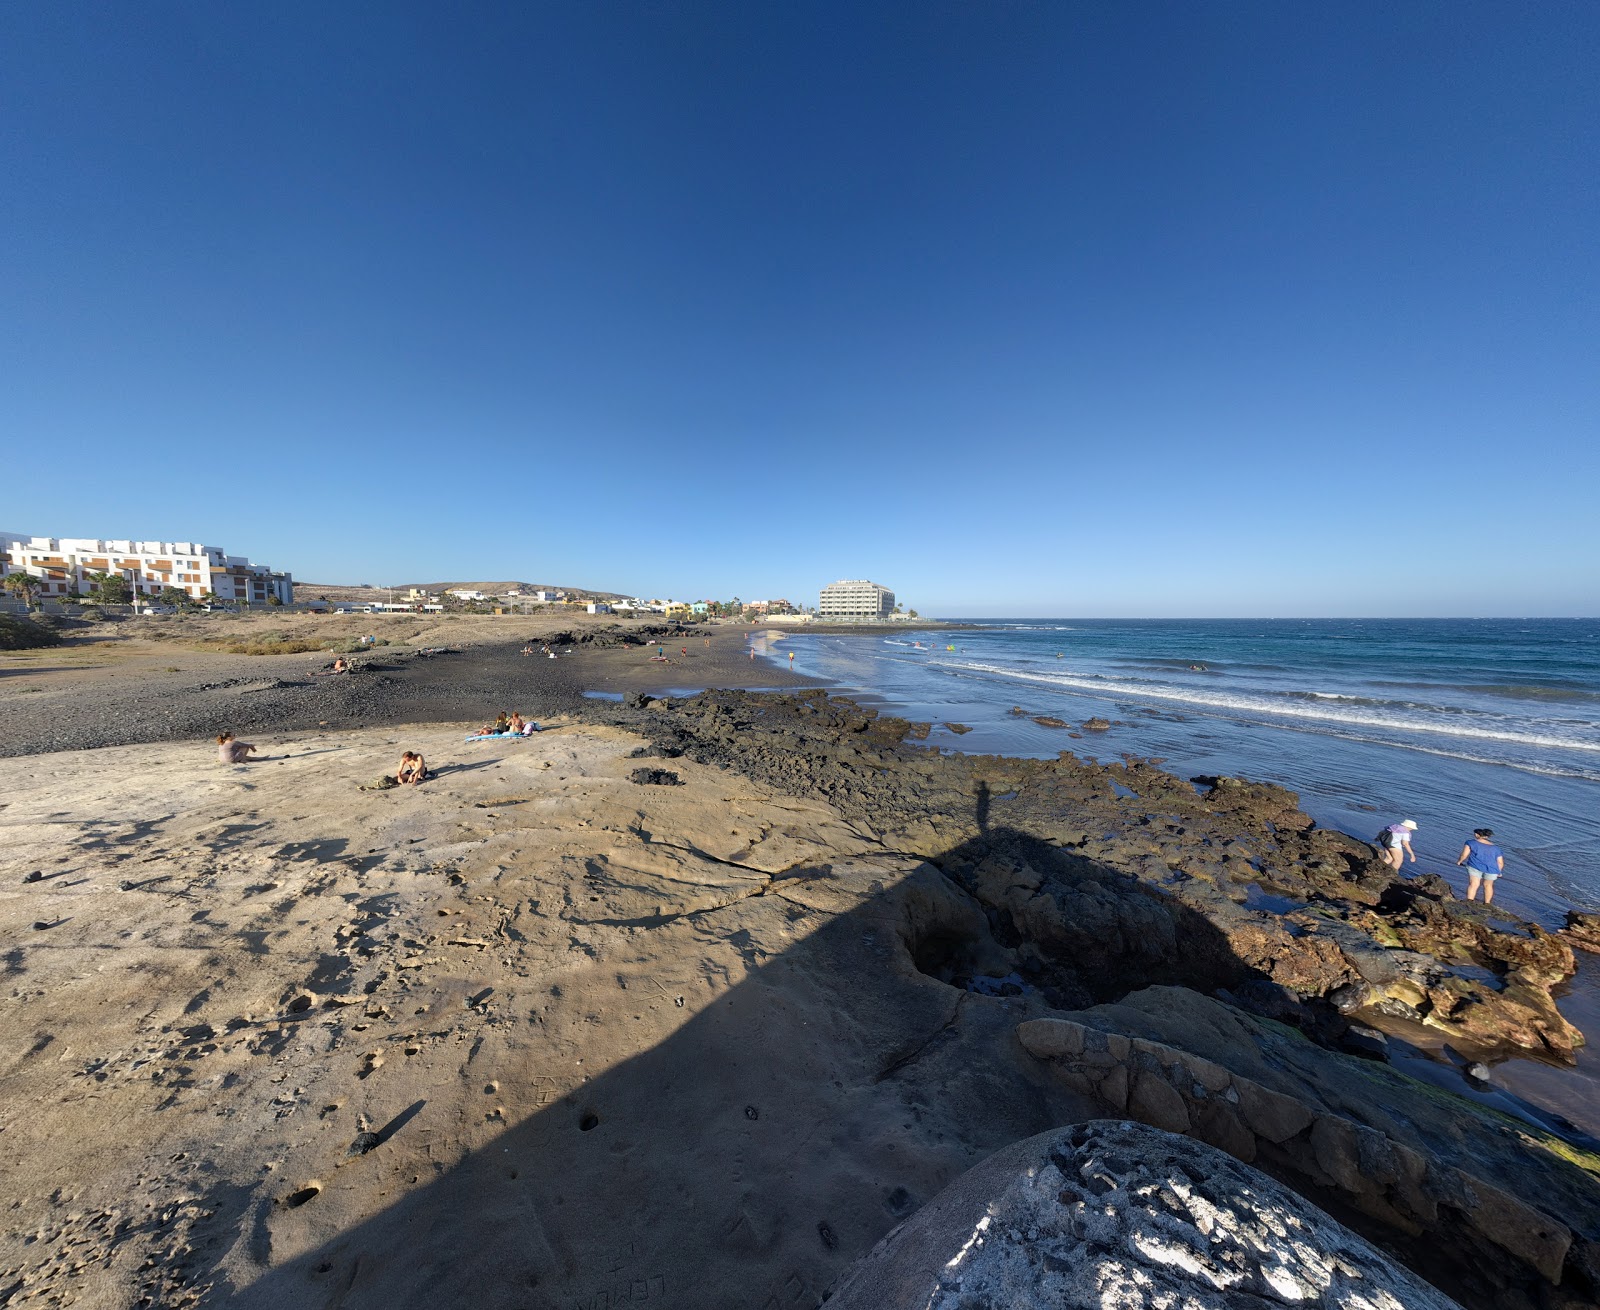 Playa El Salado'in fotoğrafı gri kum yüzey ile